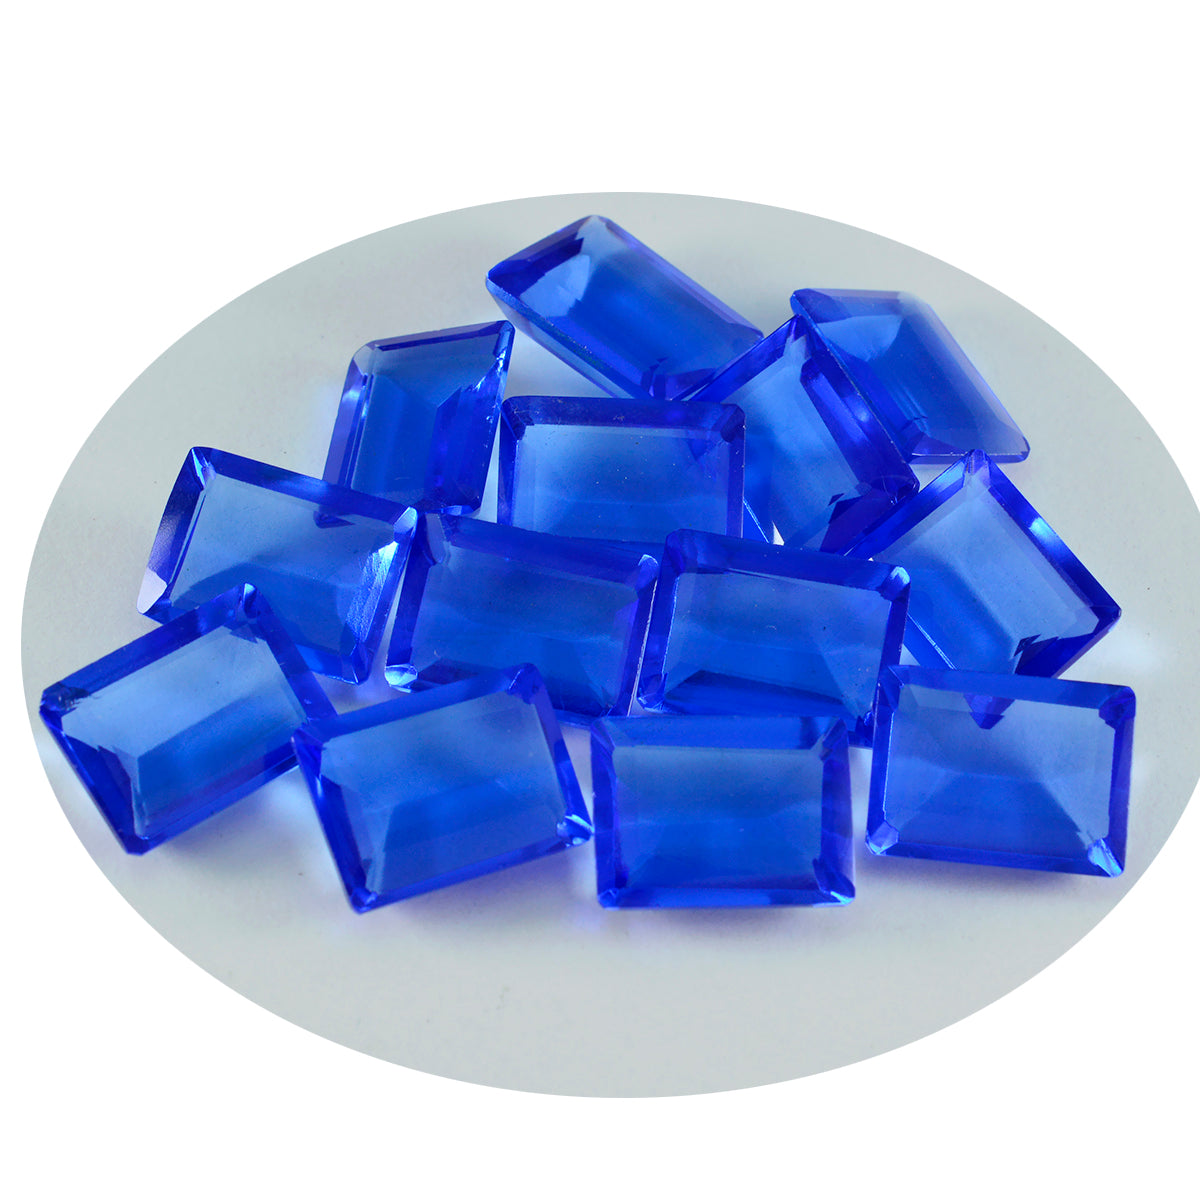 riyogems 1 шт. синий сапфир cz граненый 9x11 мм восьмиугольной формы, драгоценный камень удивительного качества, свободный драгоценный камень